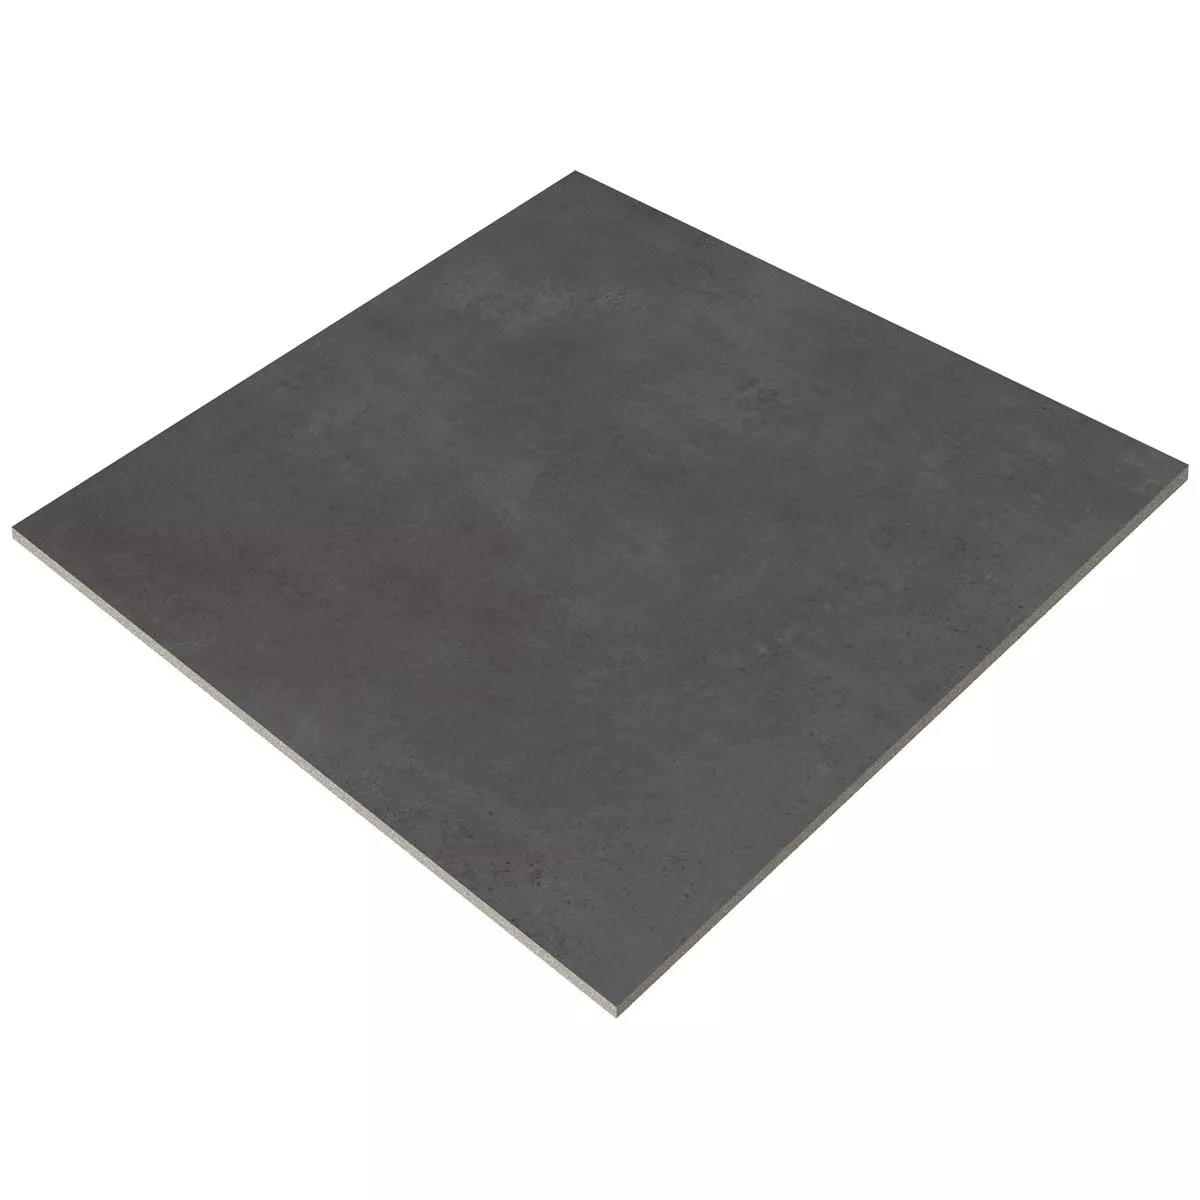 Πλακάκια Δαπέδου Assos Συγκεκριμένη Εμφάνιση R10/B Ανθρακίτης 60x60cm